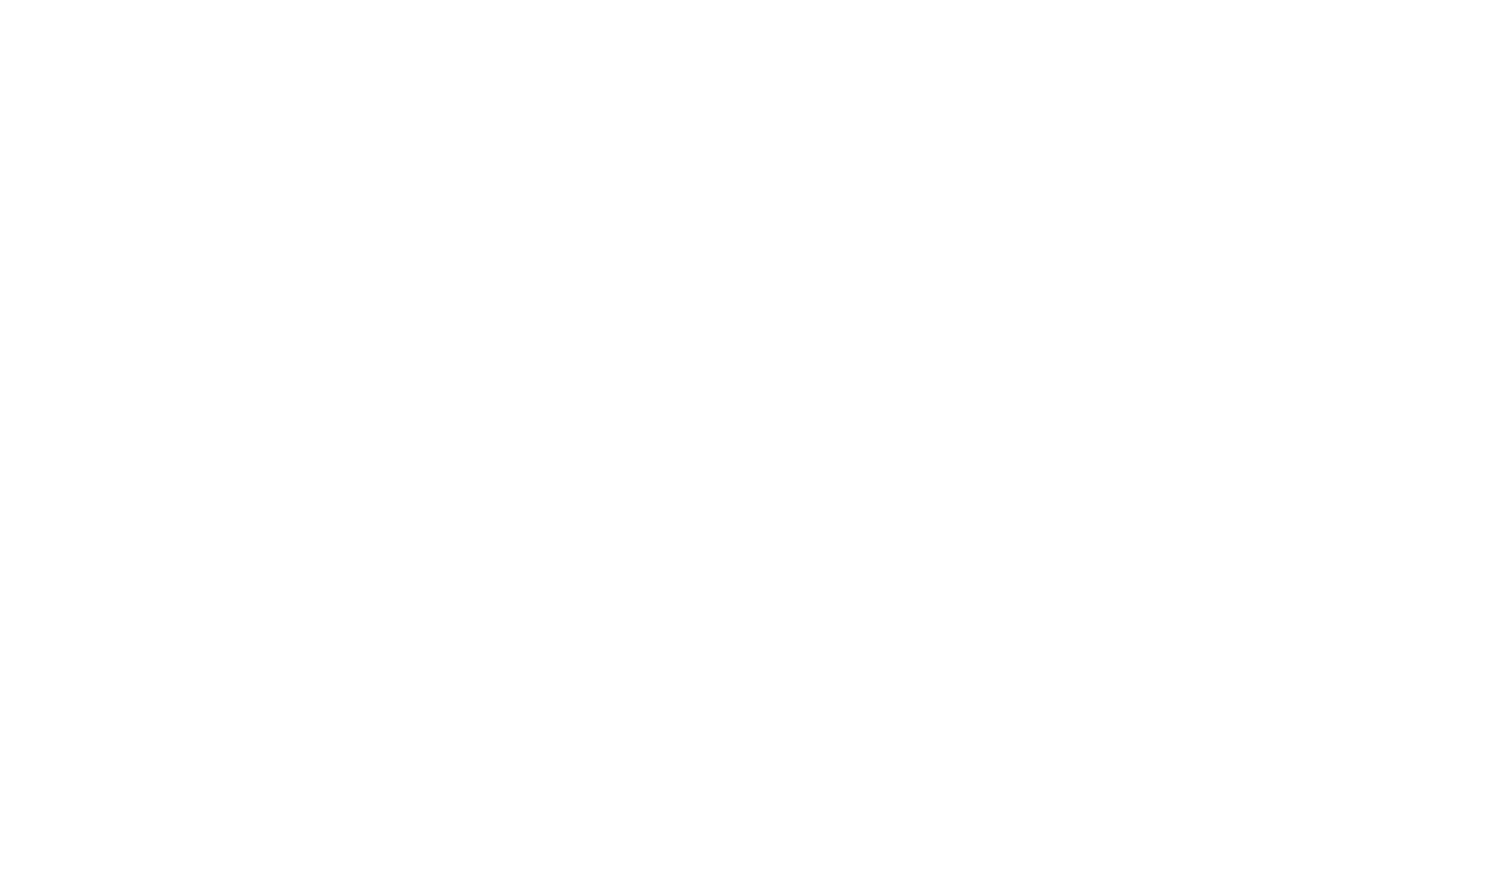 Darren O'Hare